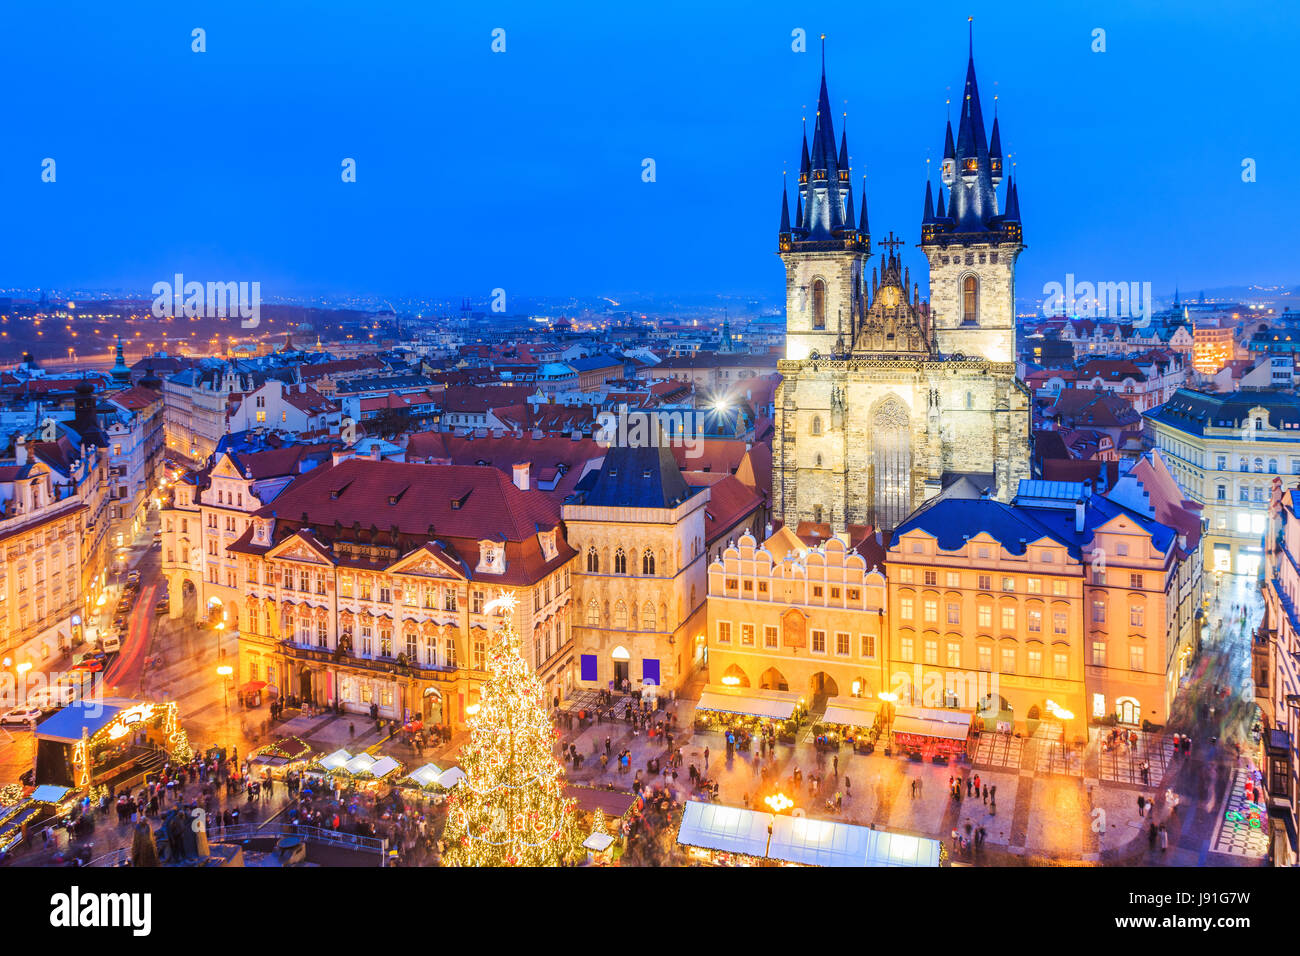 Prag, Tschechische Republik. Weihnachtsmarkt auf dem Altstädter Ring mit gotischen Tyne. Stockfoto